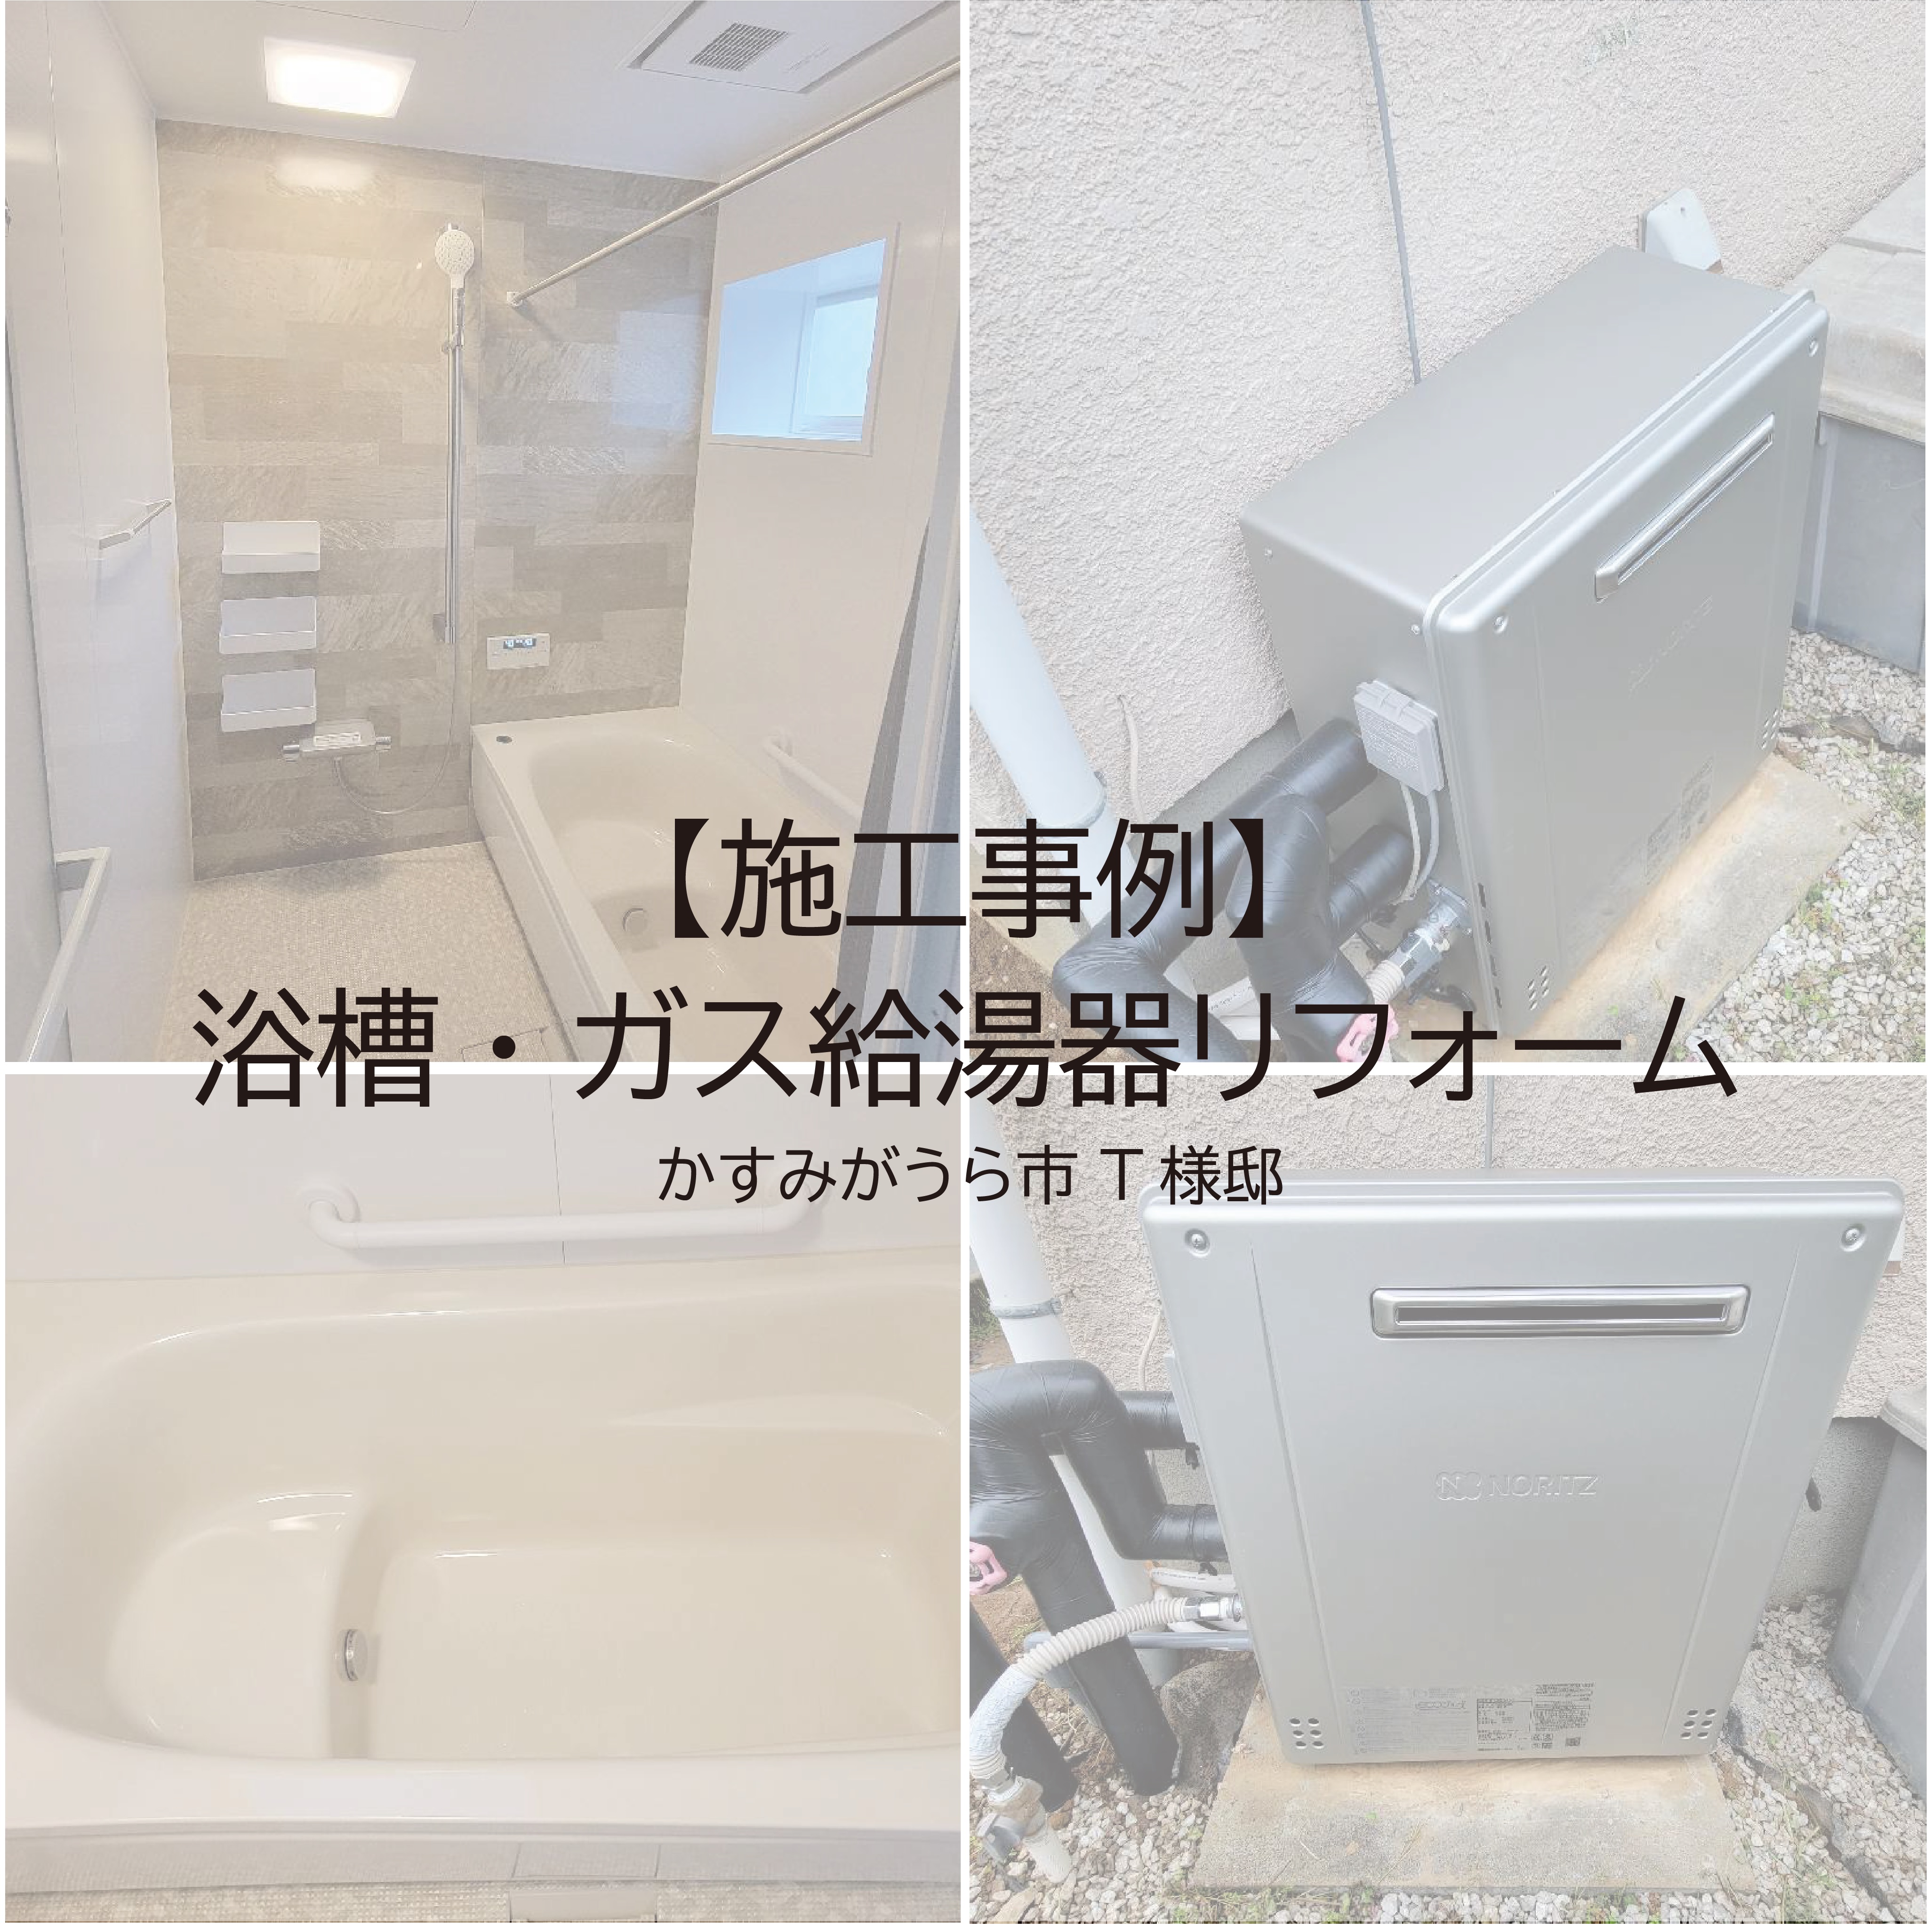 【リフォーム】浴槽・ガス給湯器リフォーム 写真